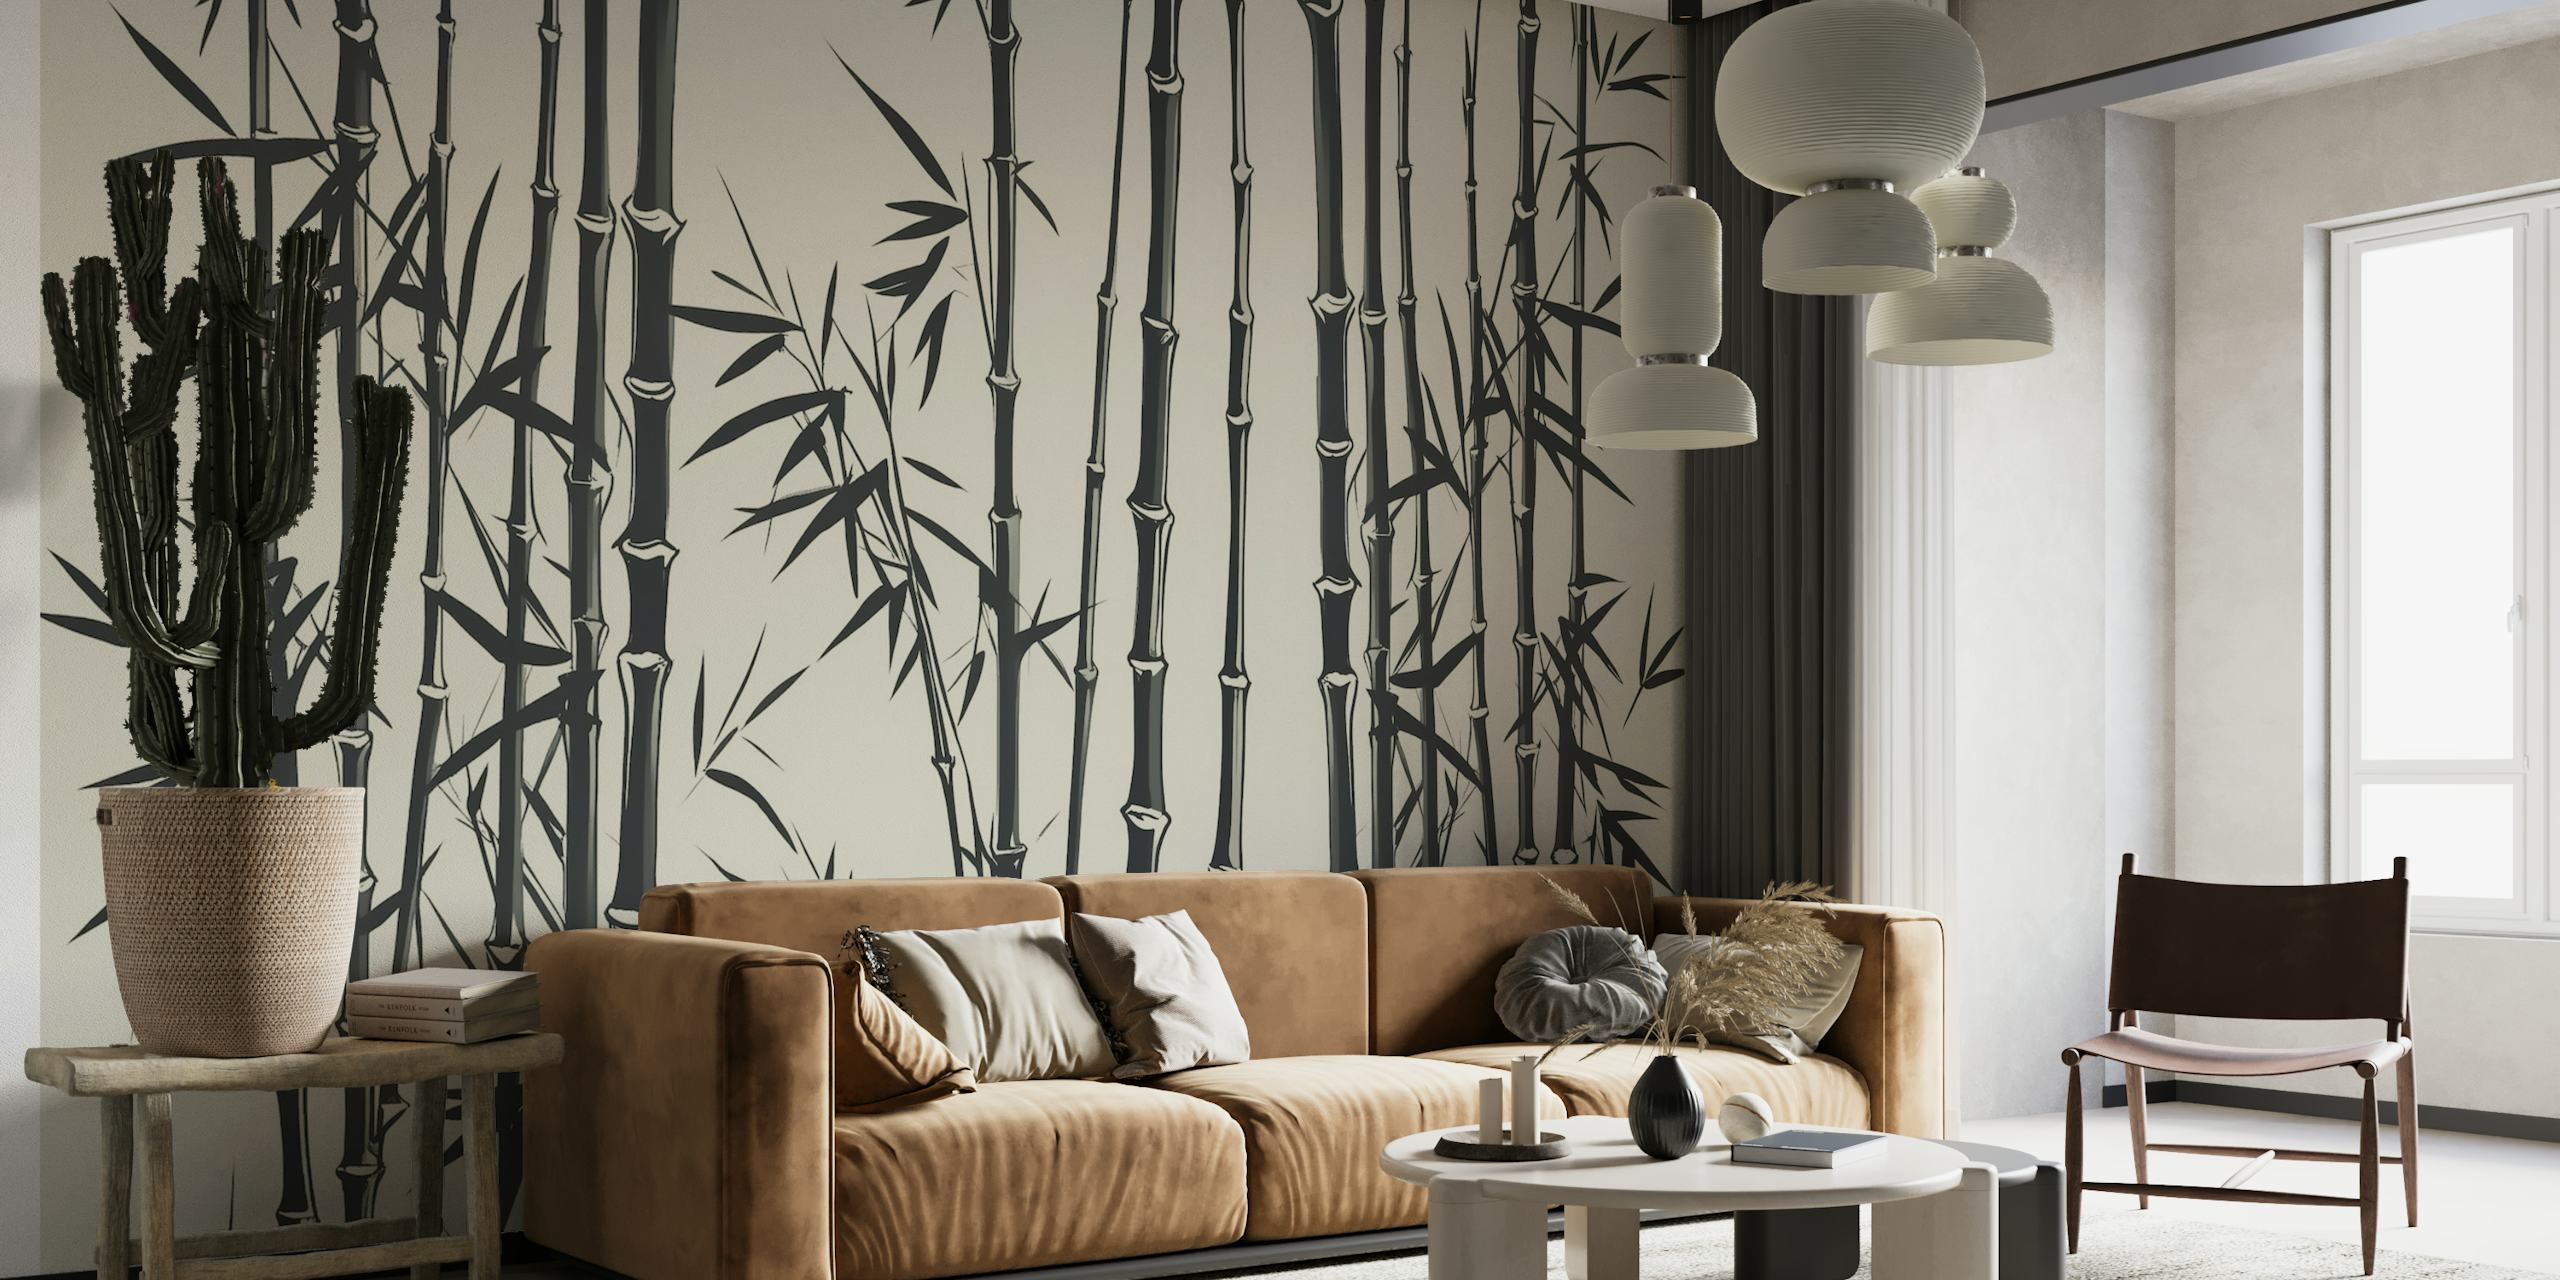 Fotomural de hierba de bambú estilo Art Déco en blanco y negro sobre fondo crema